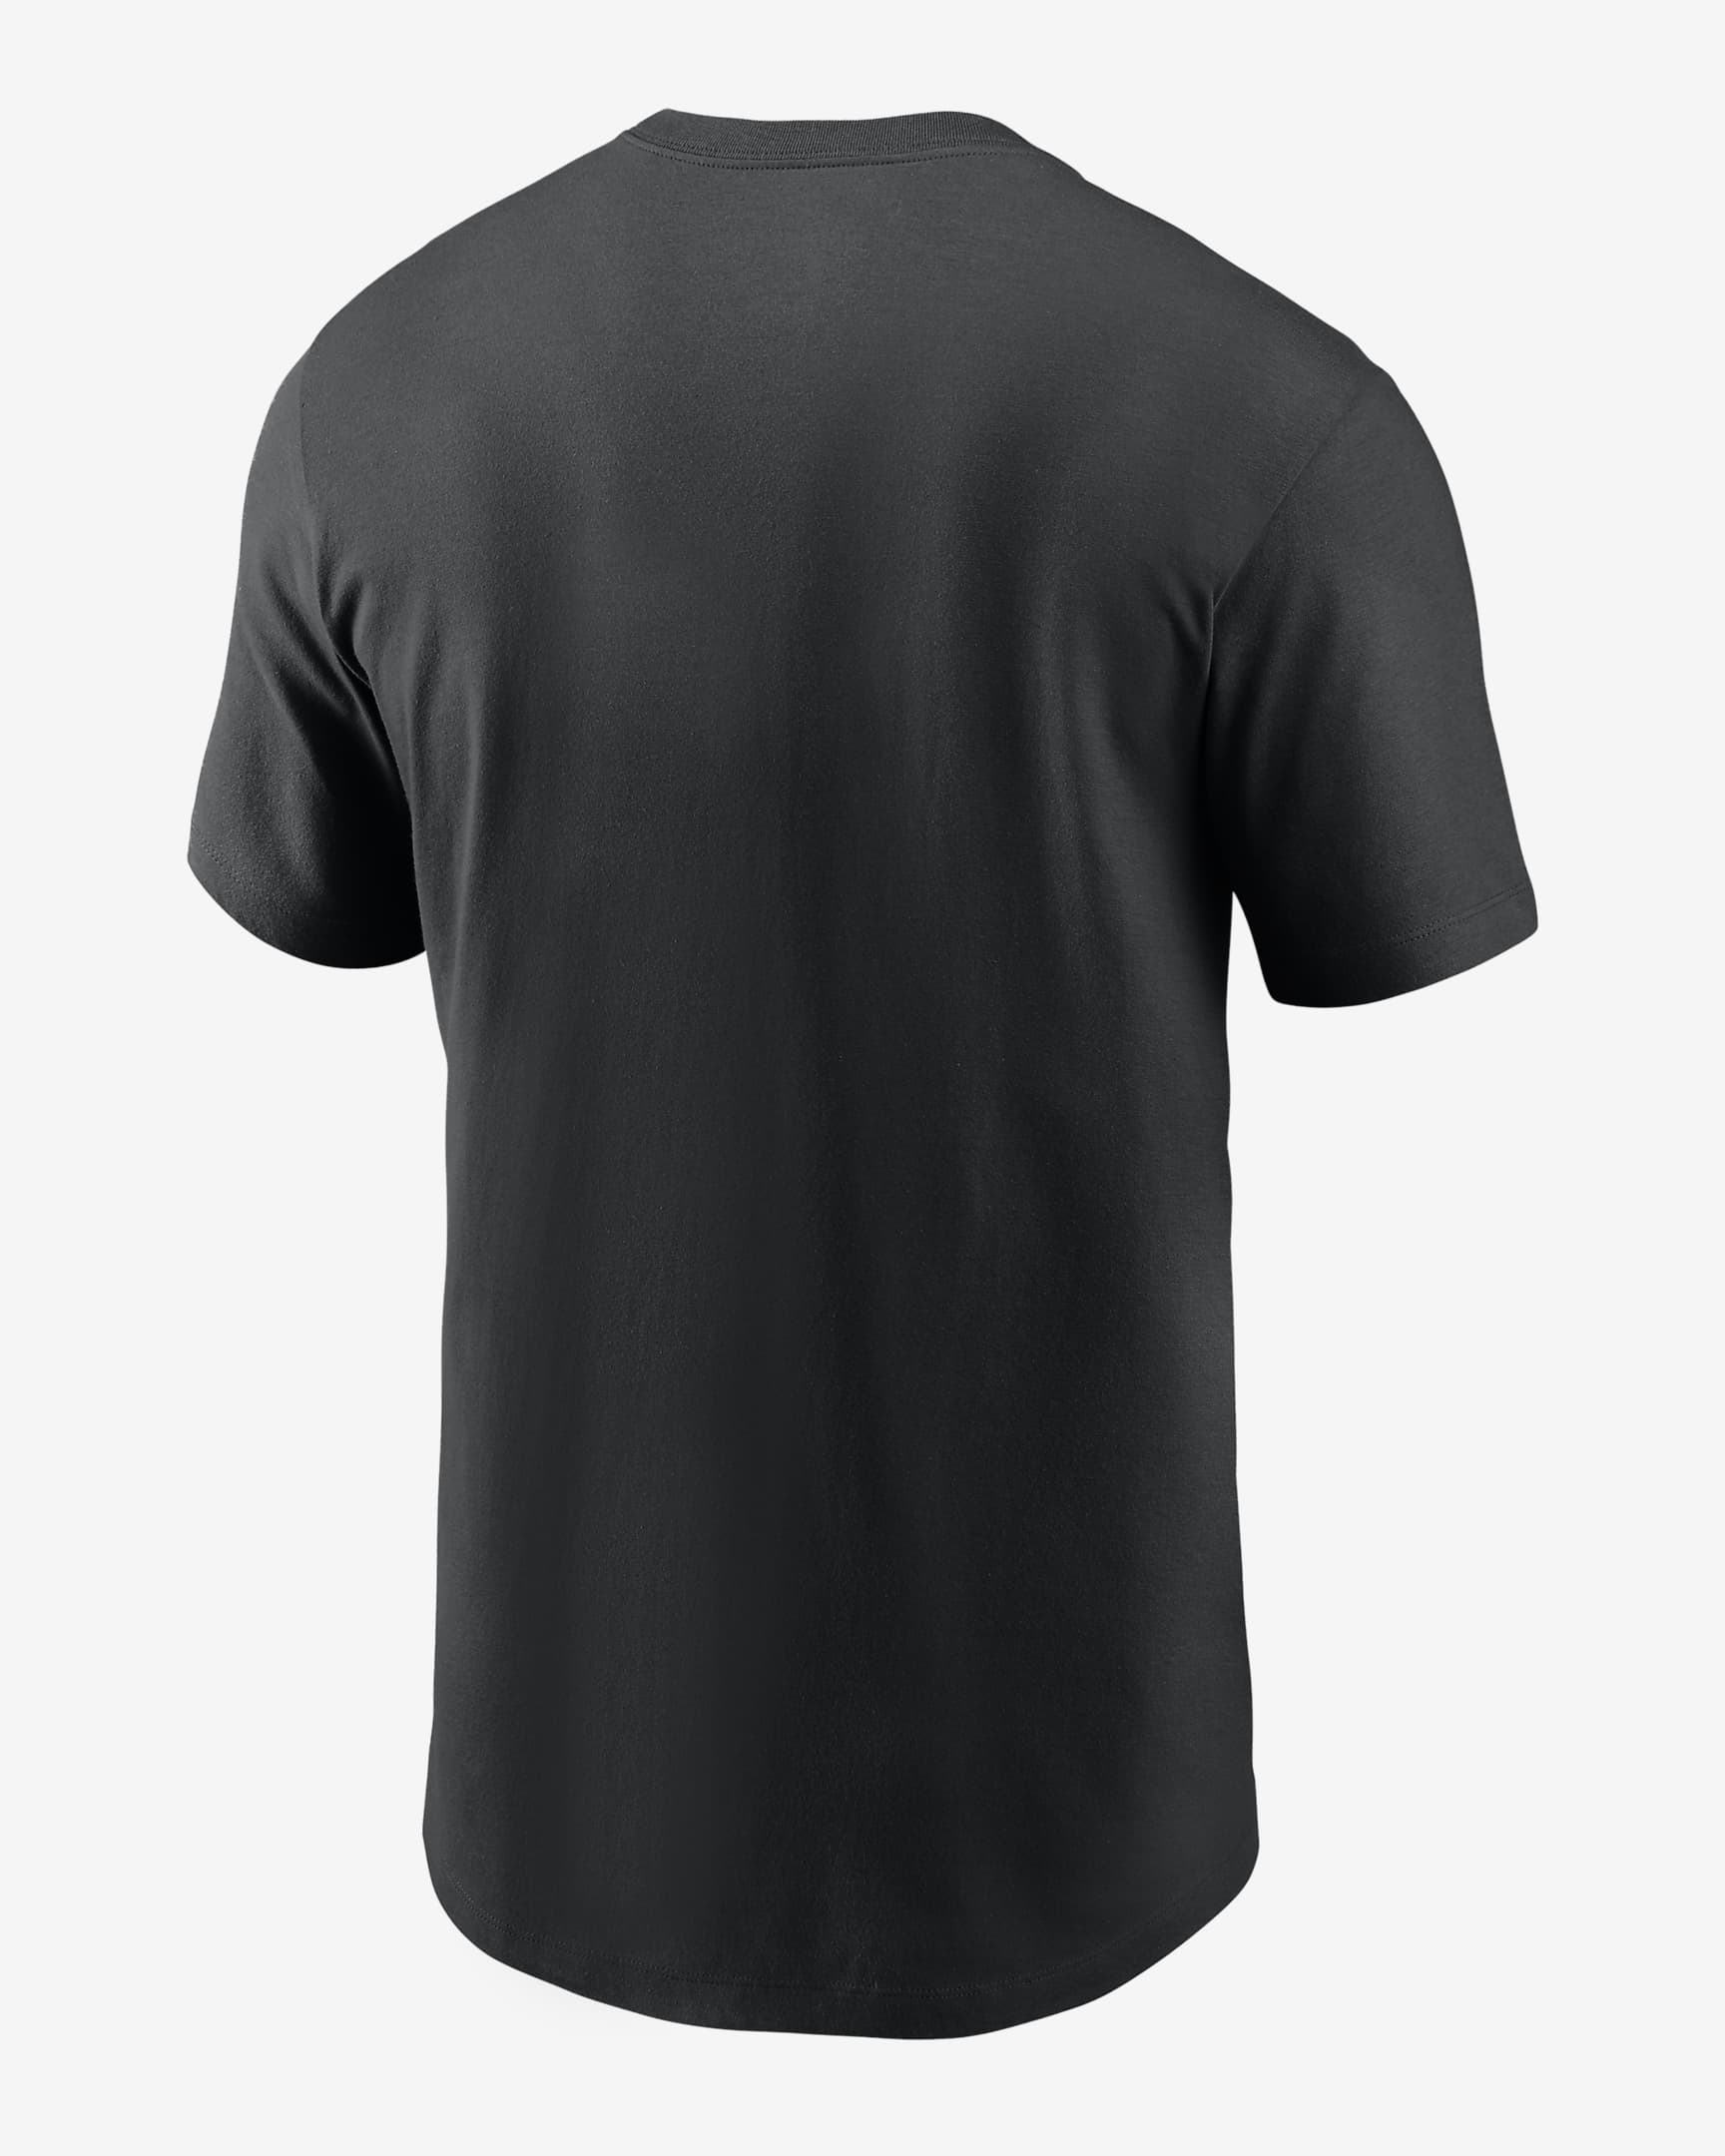 New Orleans Saints Division Essential Men's Nike NFL T-Shirt. Nike.com